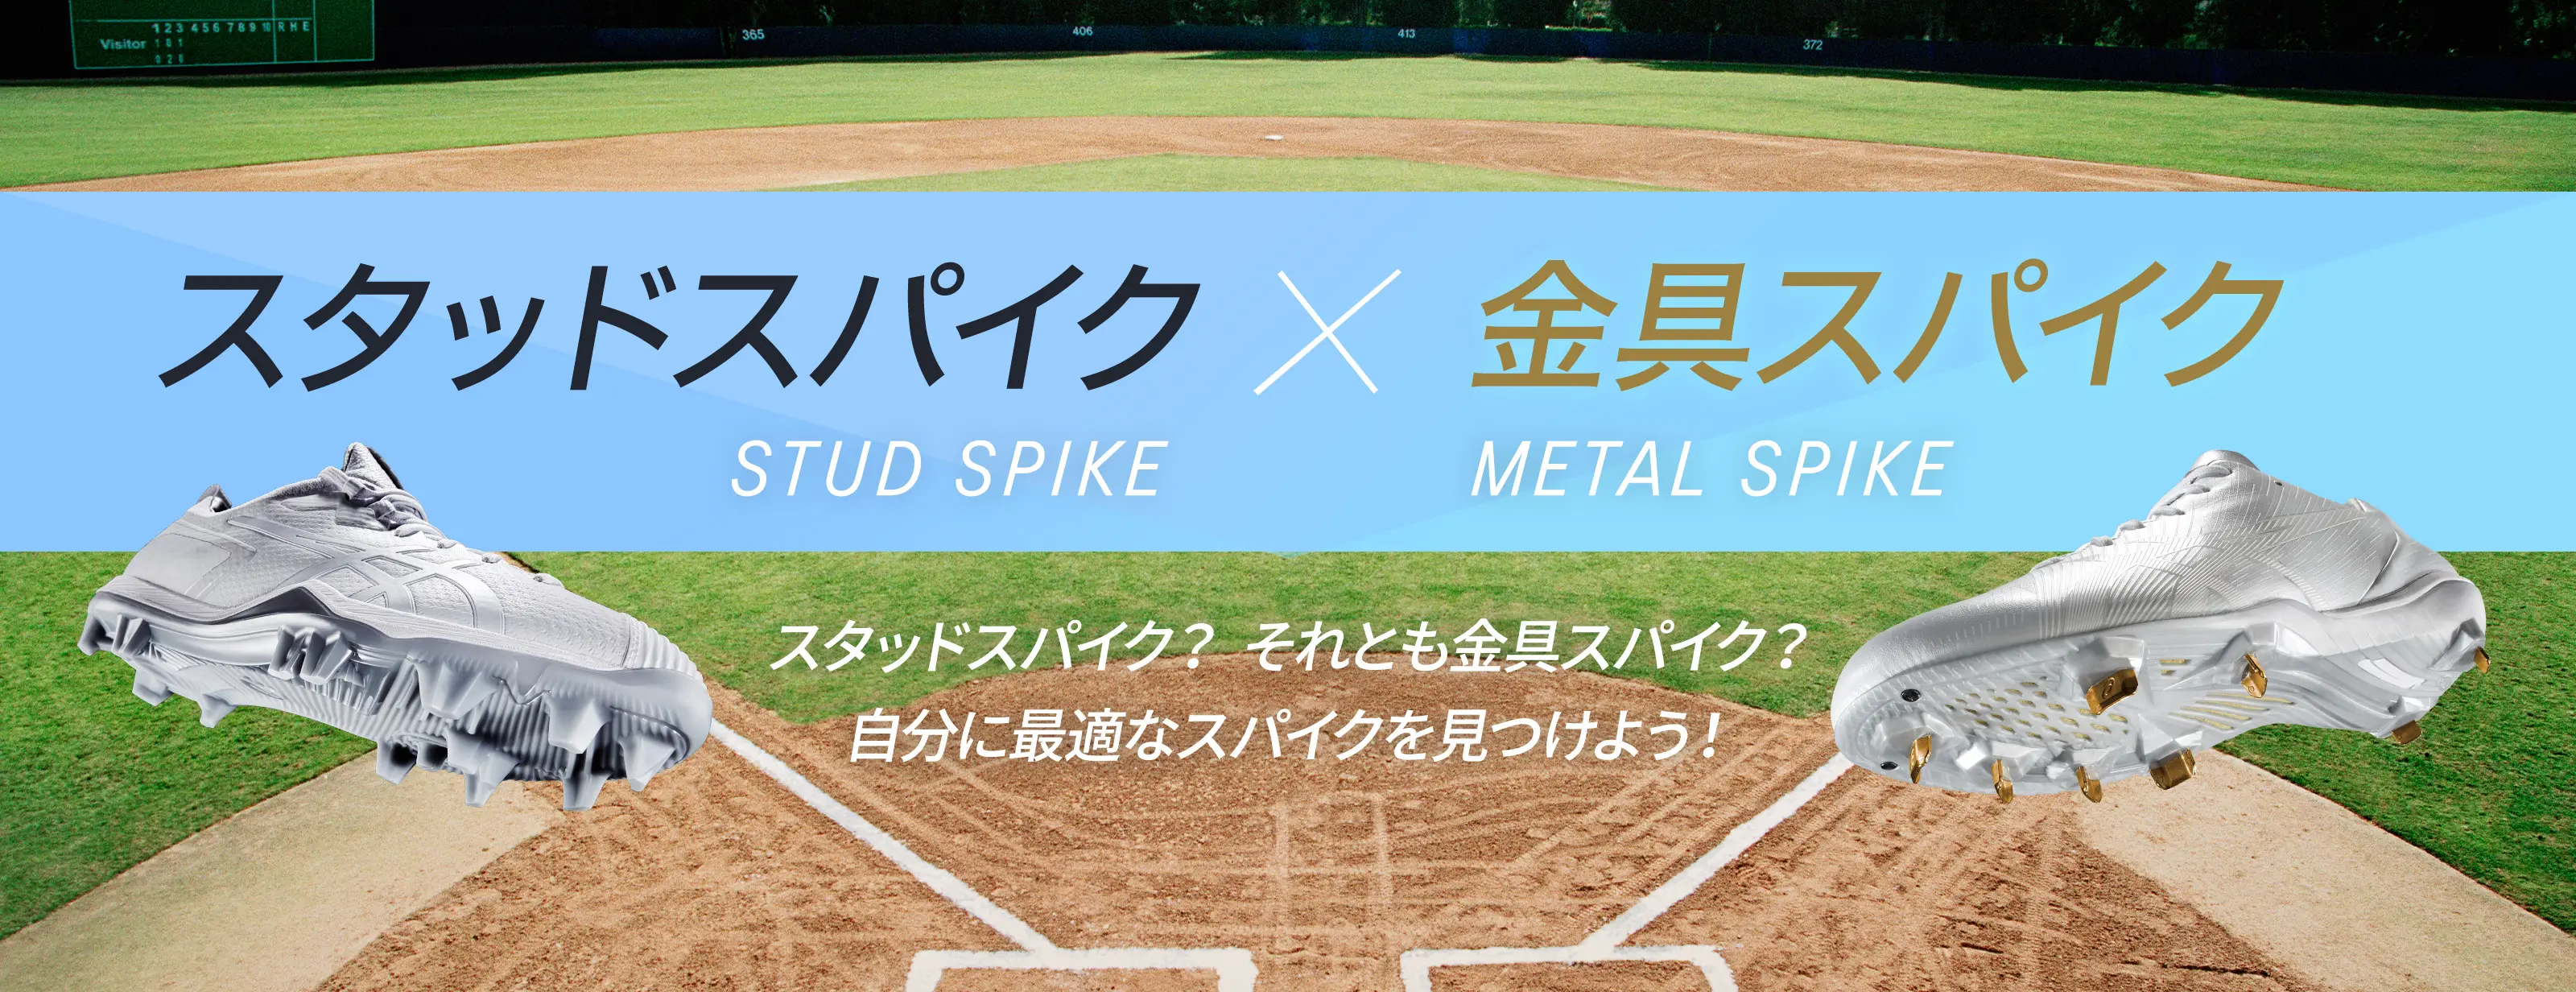 野球 スタッドスパイク STUD SPIKE／金具スパイク METAL SPIKE 